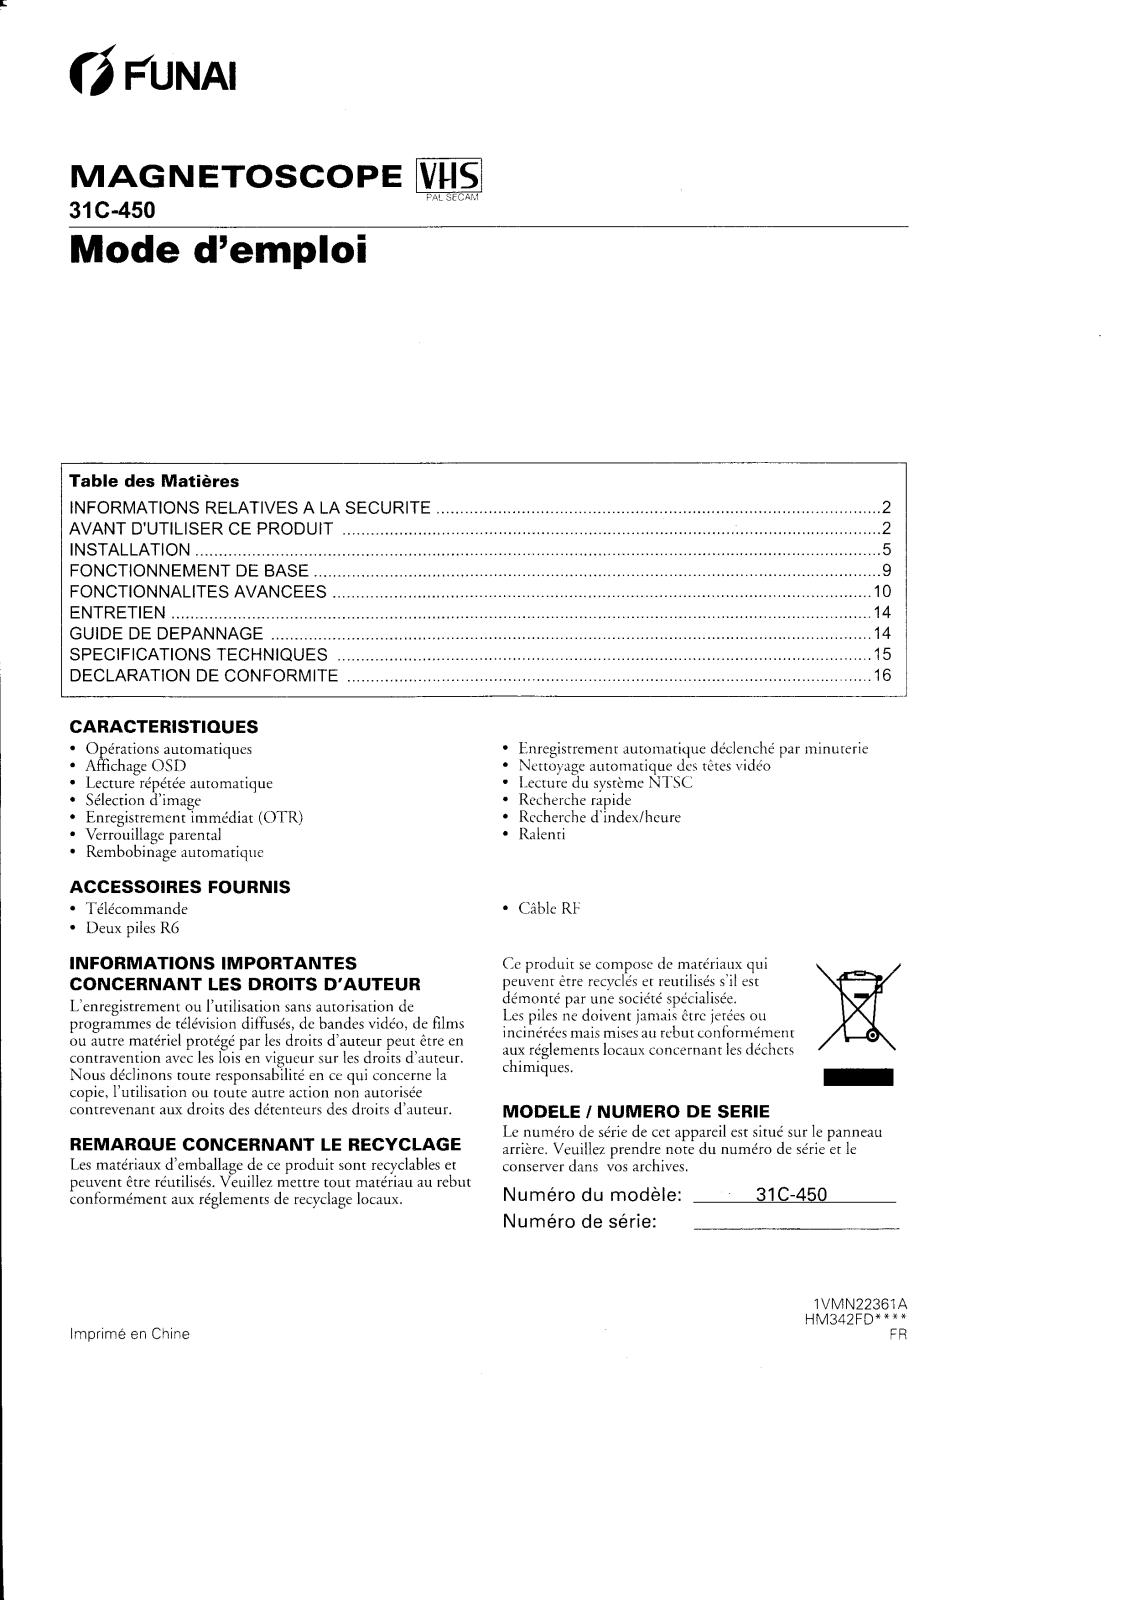 FUNAI 31C-450 User Manual